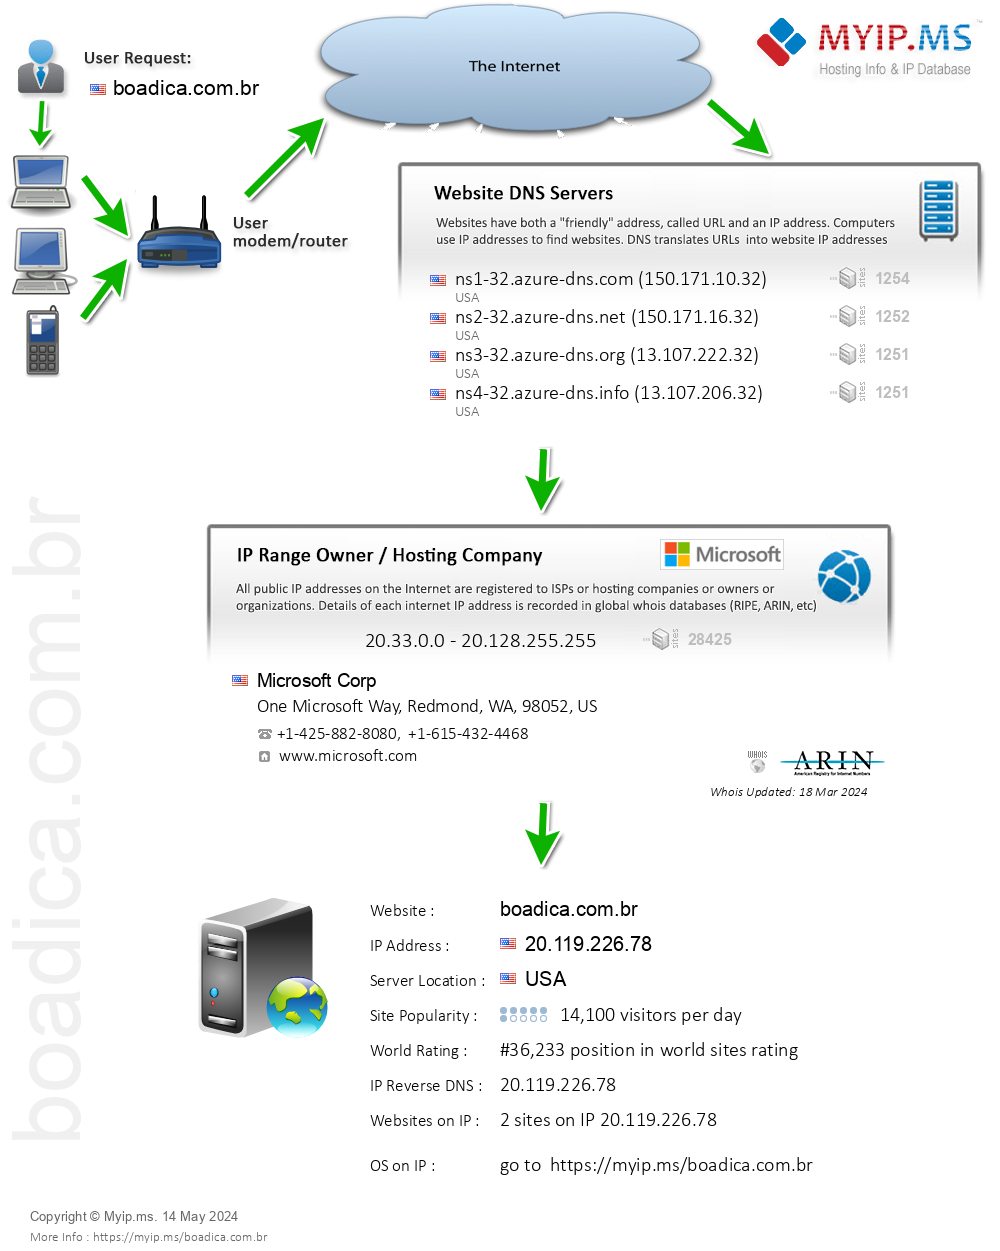 Boadica.com.br - Website Hosting Visual IP Diagram